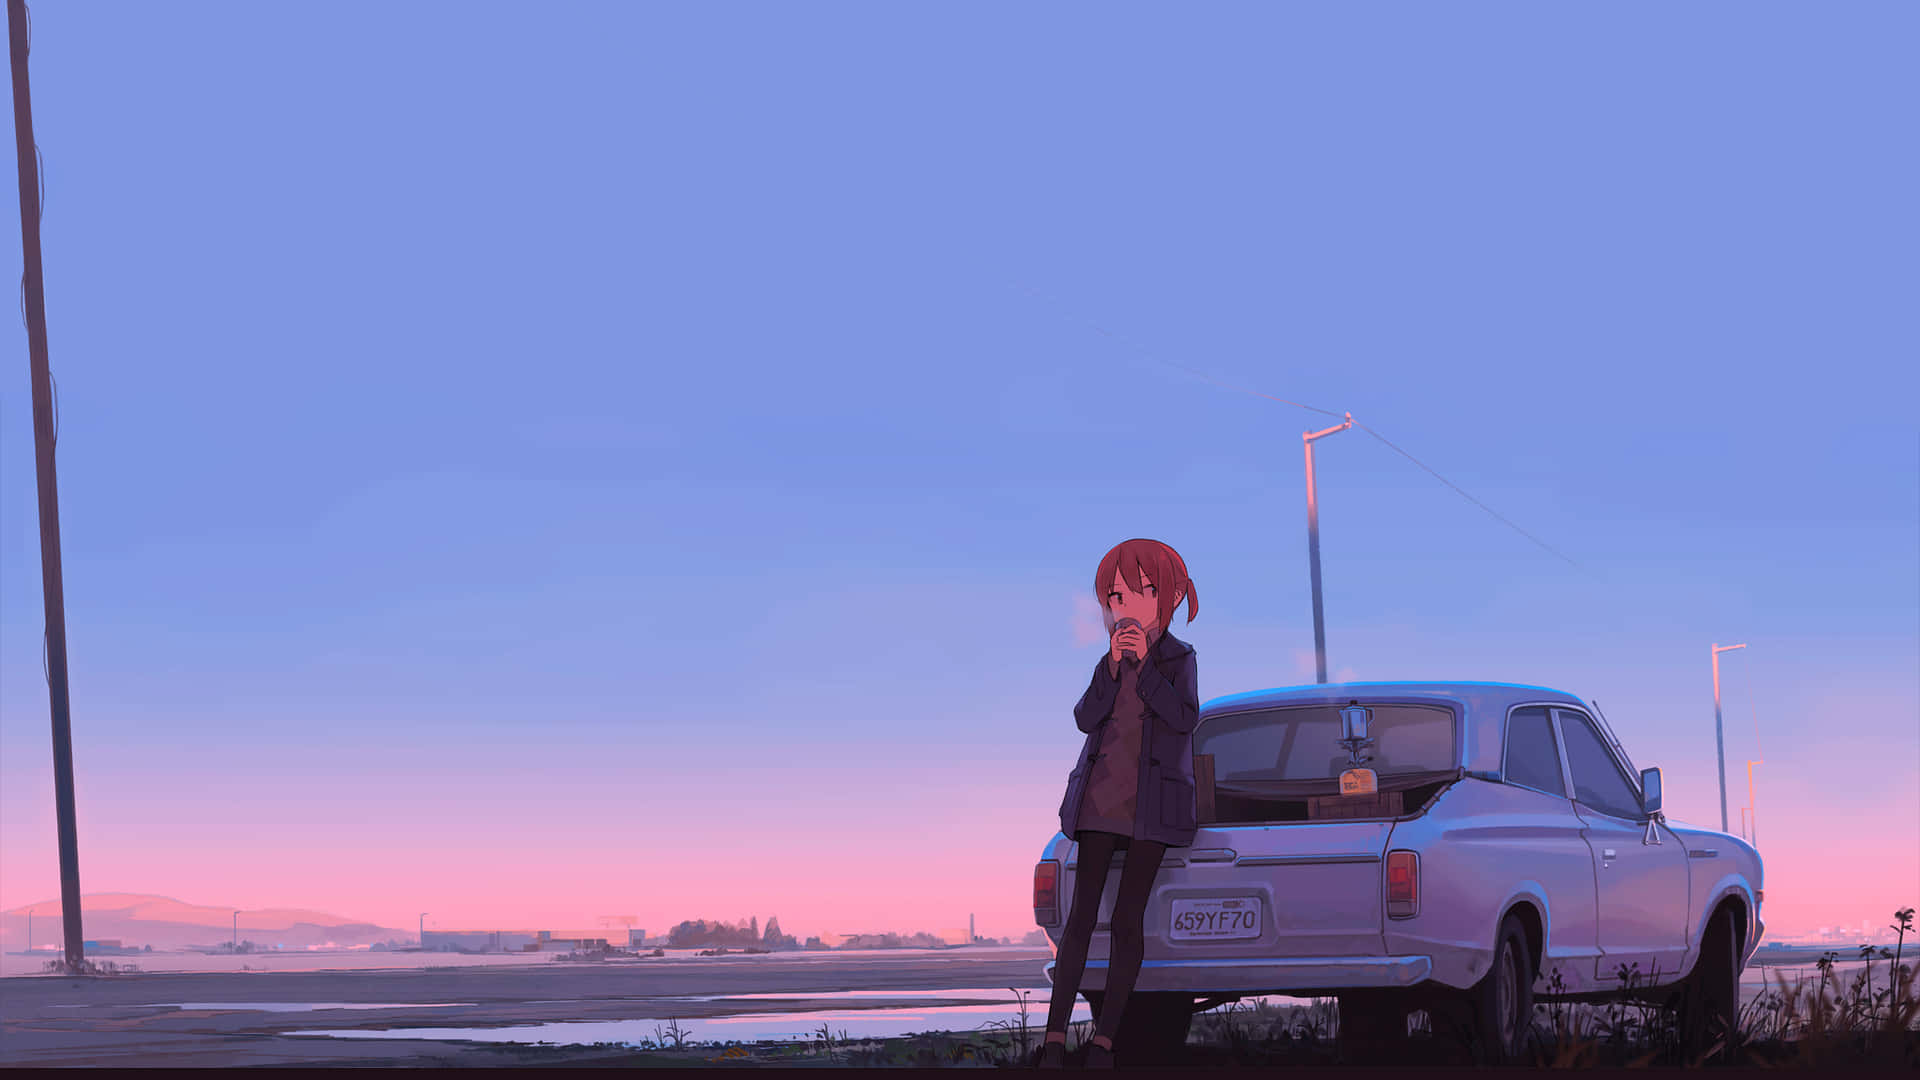 2048x1152 Aesthetic Anime Girl Leaning On Car Wallpaper